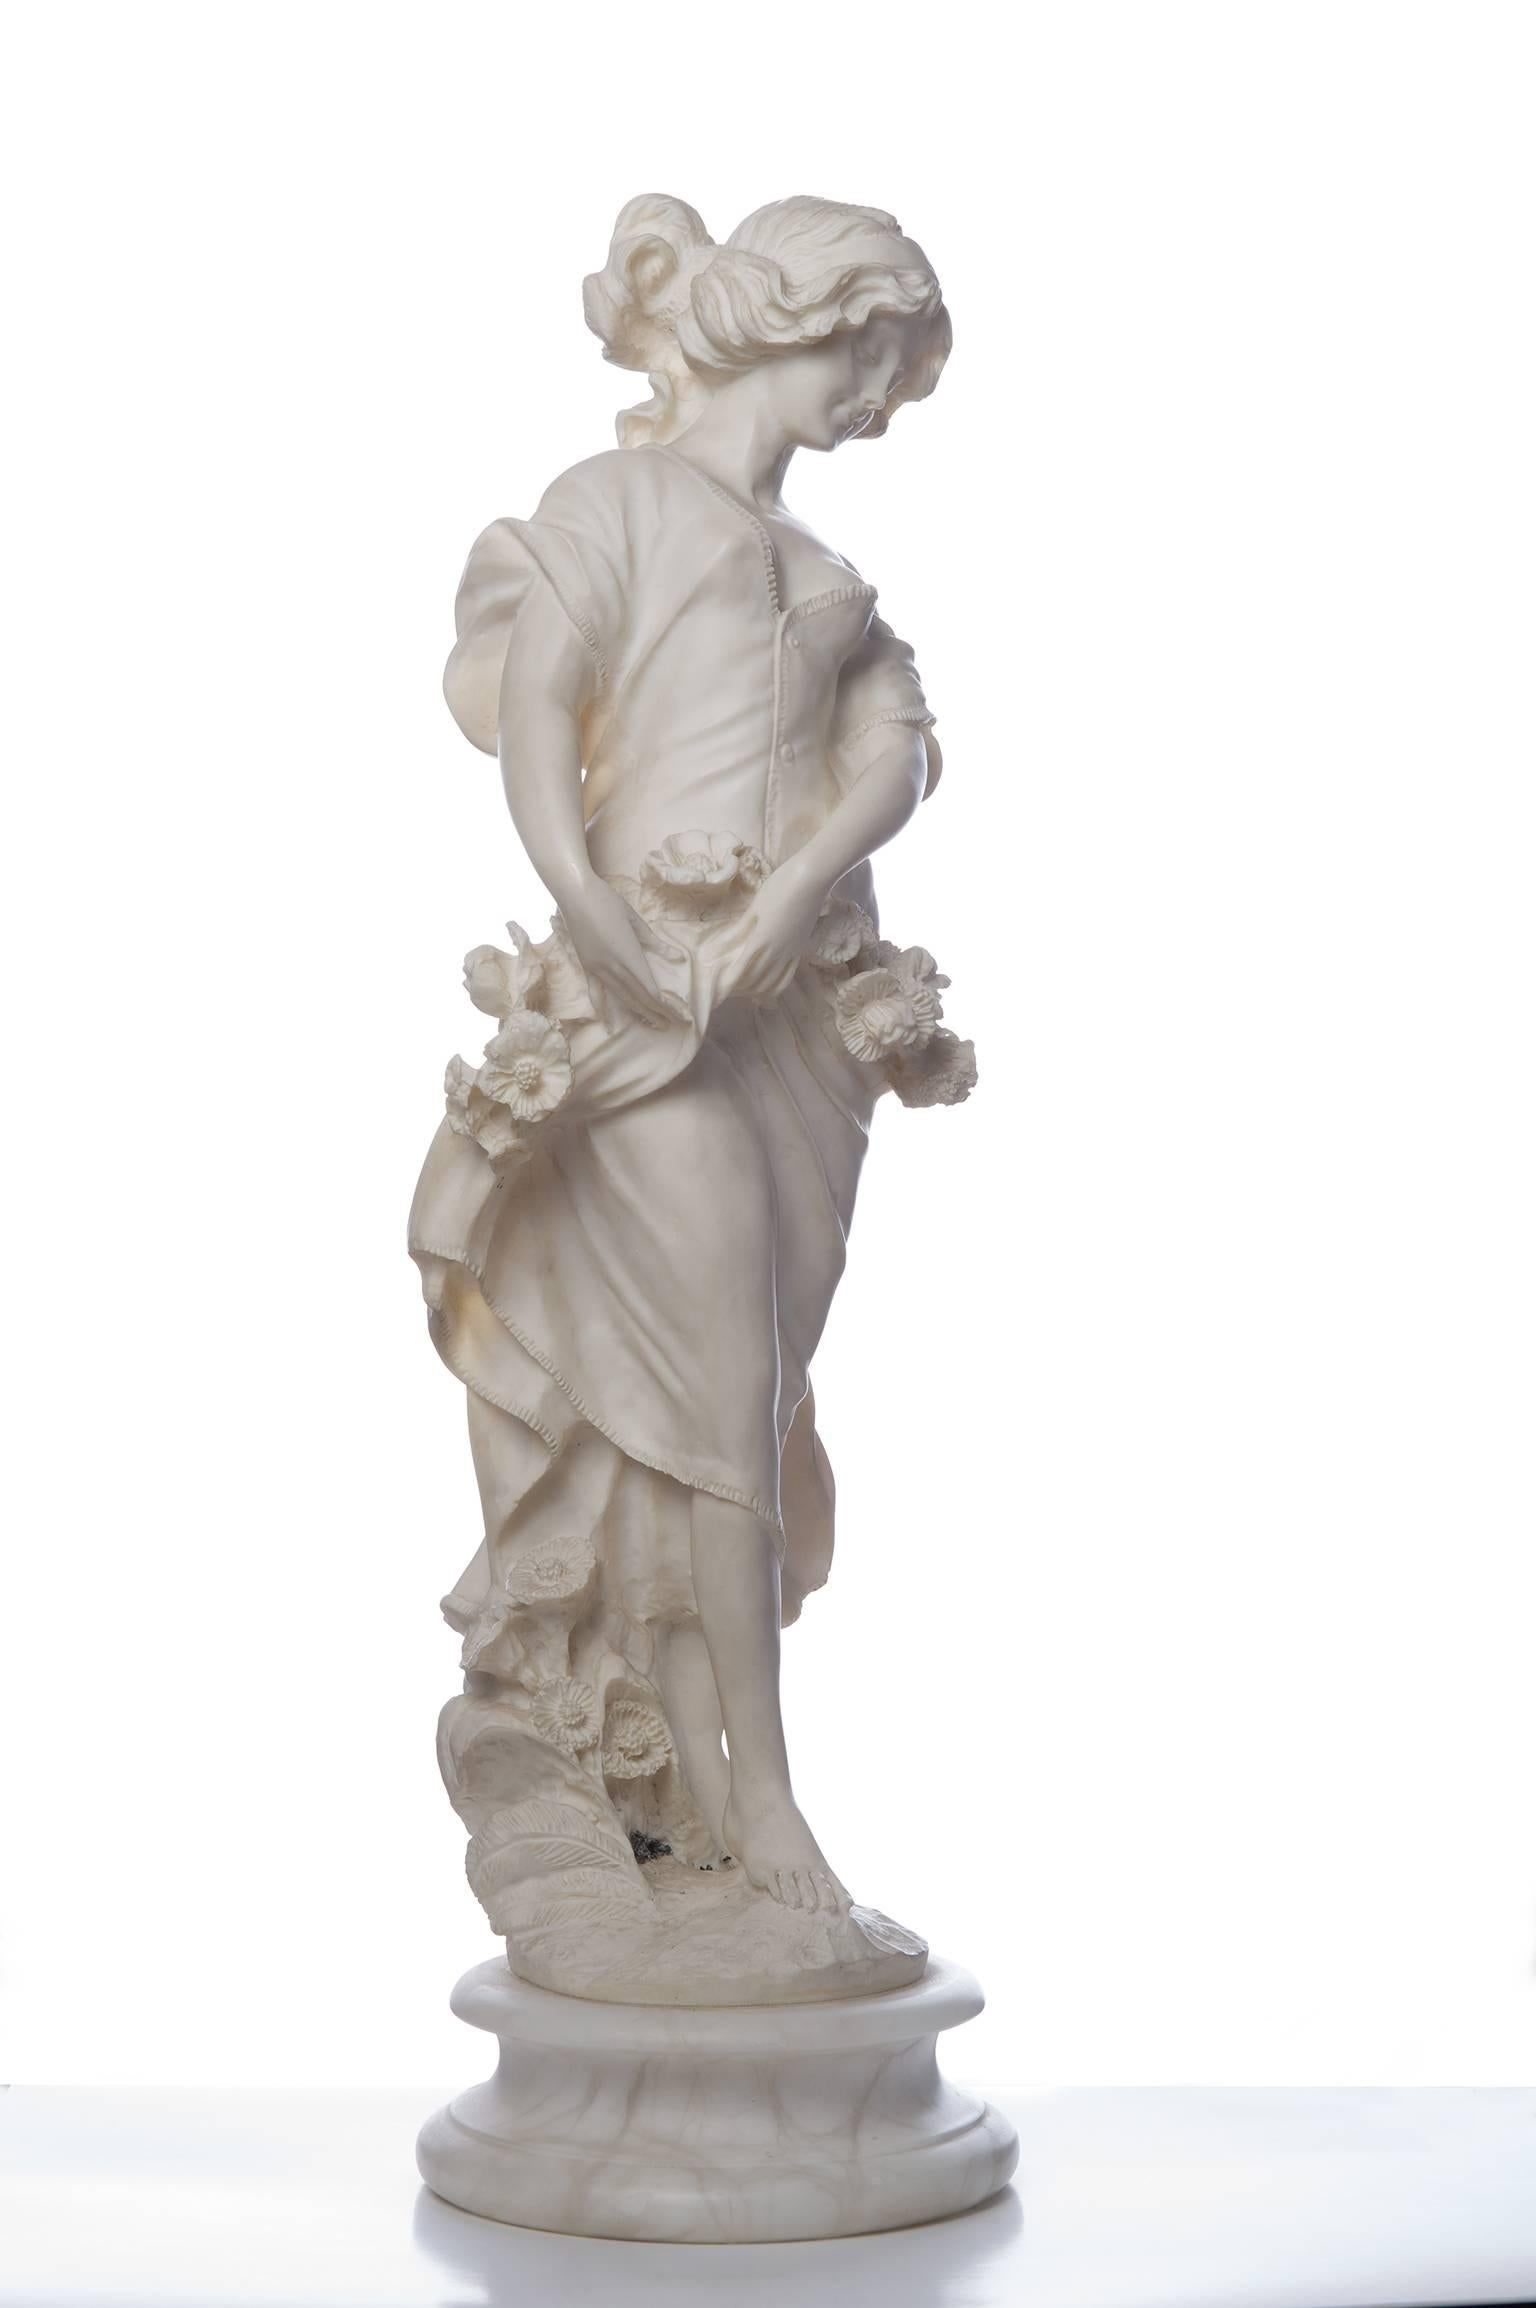 Bezaubernde weibliche Figur mit Blumen, die den Frühling darstellt, wie die berühmte Statue auf der italienischen Promenade in San Remo.  Das ist selten!
Bereits von der italienischen Superintendenz genehmigt  für den Export - 

O/6803.
